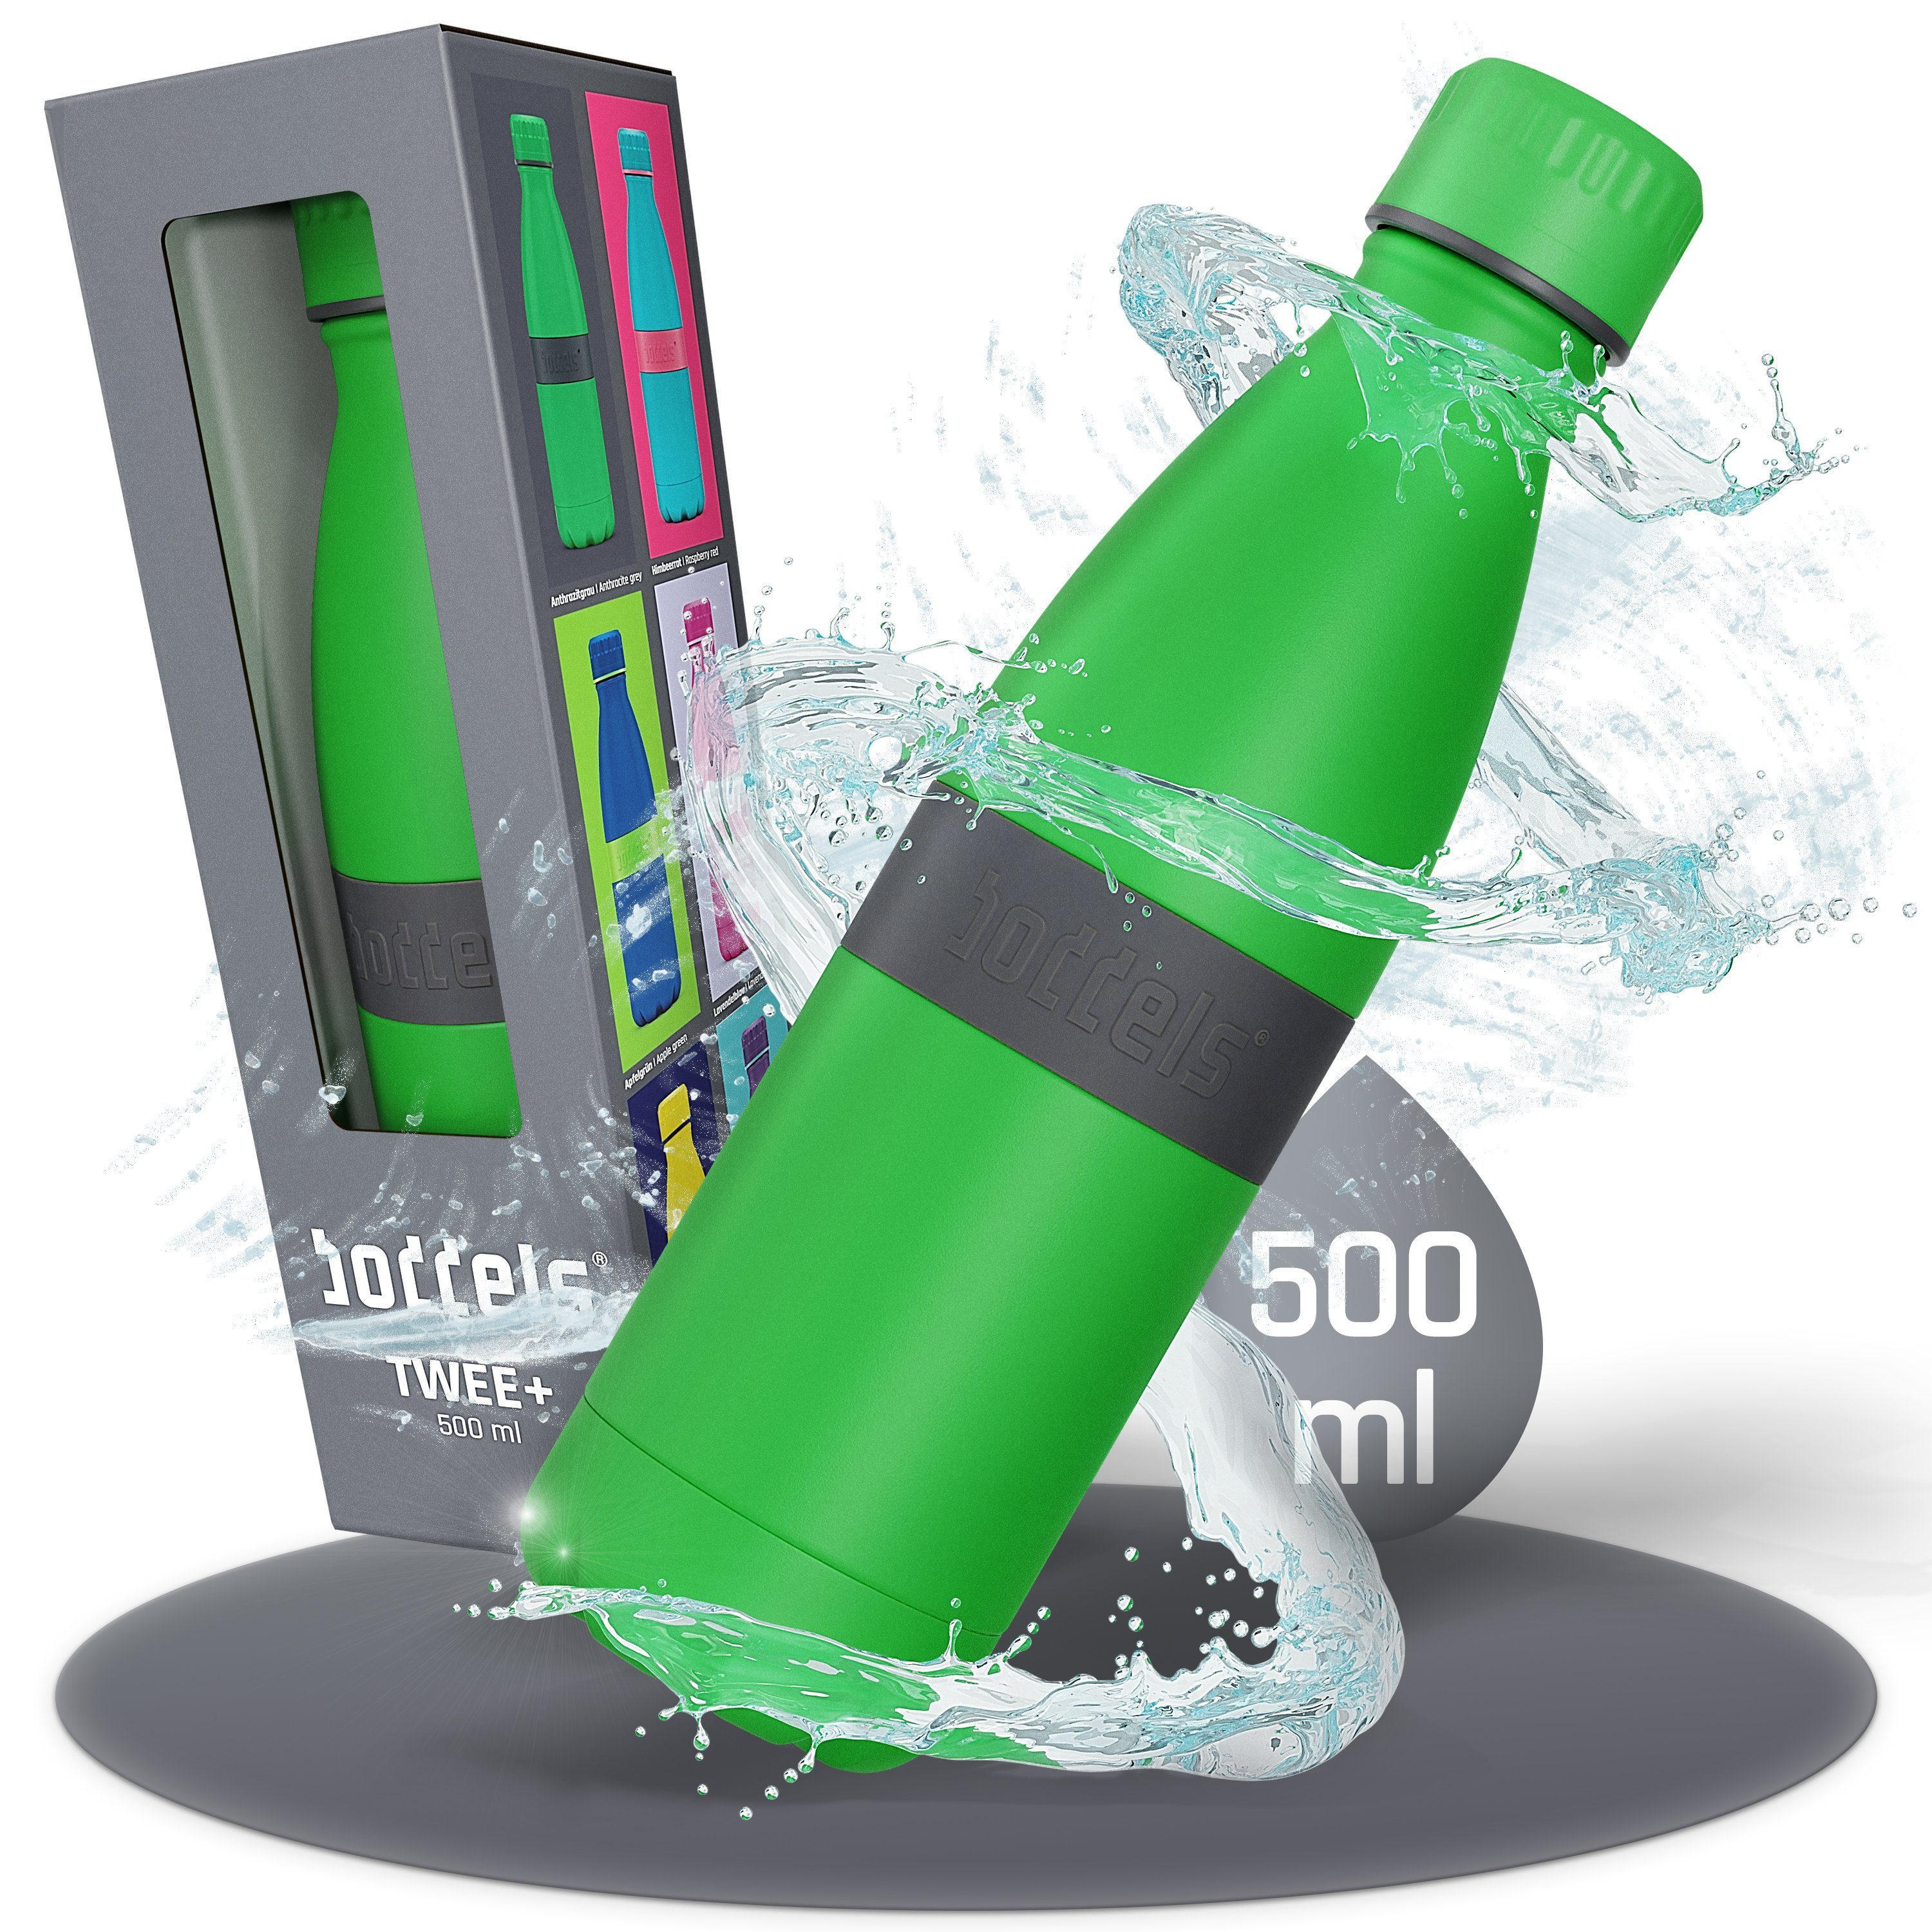 boddels Isolierflasche TWEE+ 500ml - Trinkflasche aus Edelstahl, doppelwandig, auslaufsicher, bruchfest Anthrazitgrau / Grün